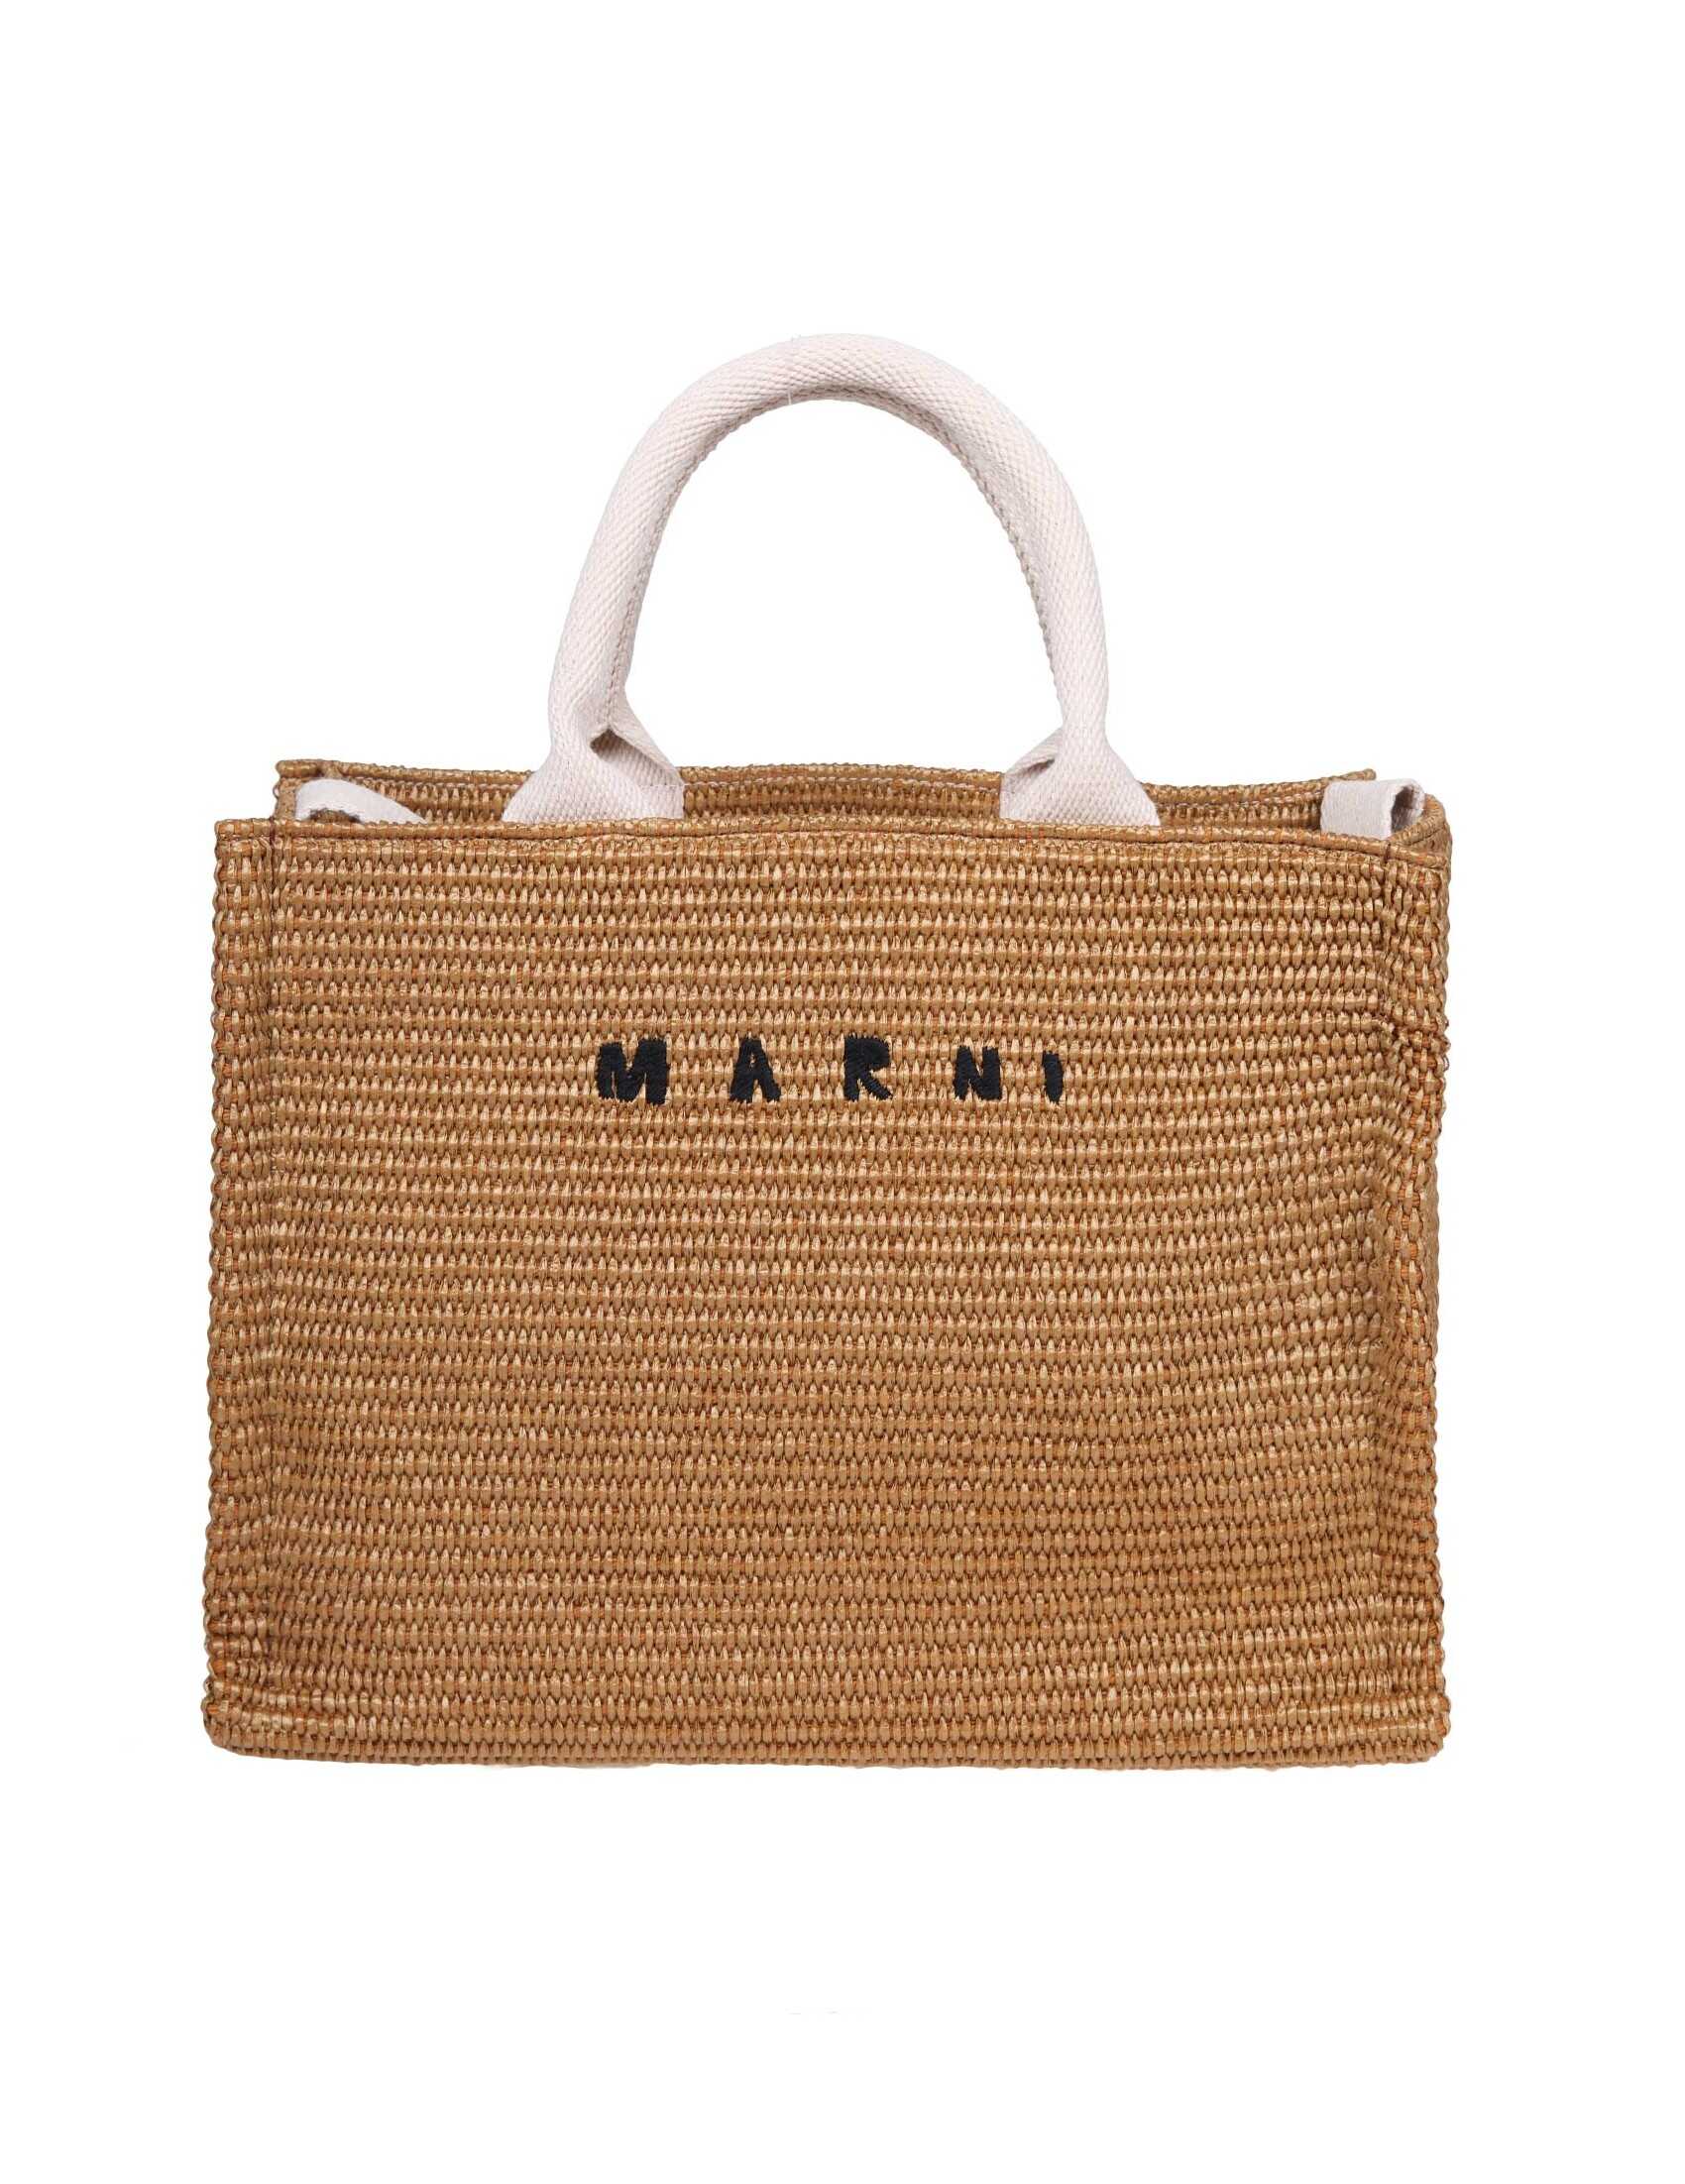 Marni Marni shopping small in natural color raffia effect fabric Brown